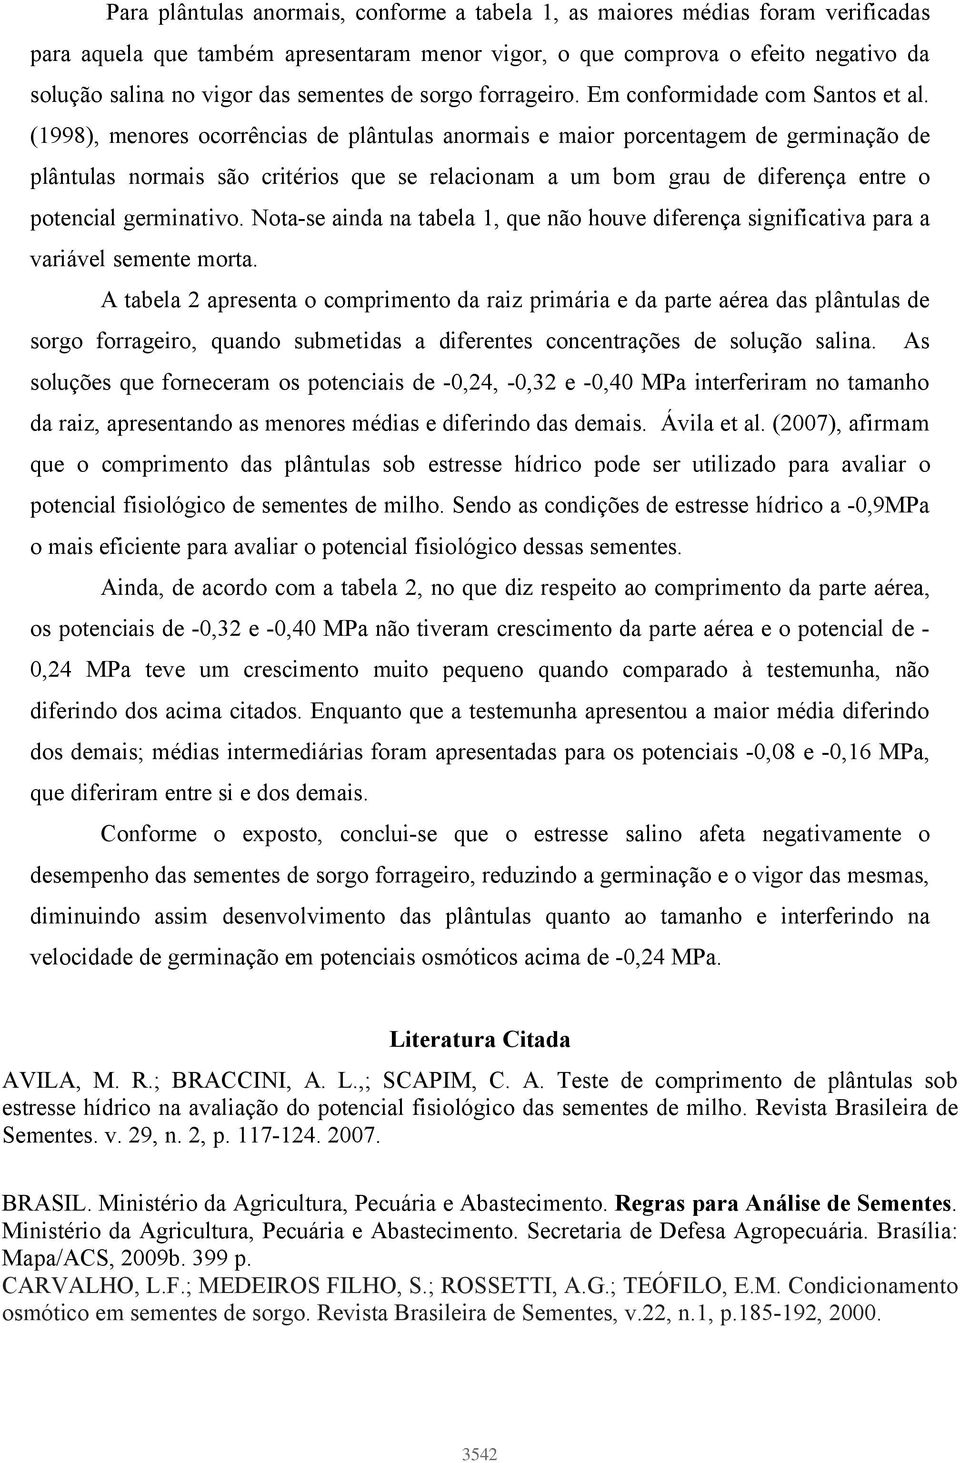 (1998), menores ocorrências de plântulas anormais e maior porcentagem de germinação de plântulas normais são critérios que se relacionam a um bom grau de diferença entre o potencial germinativo.